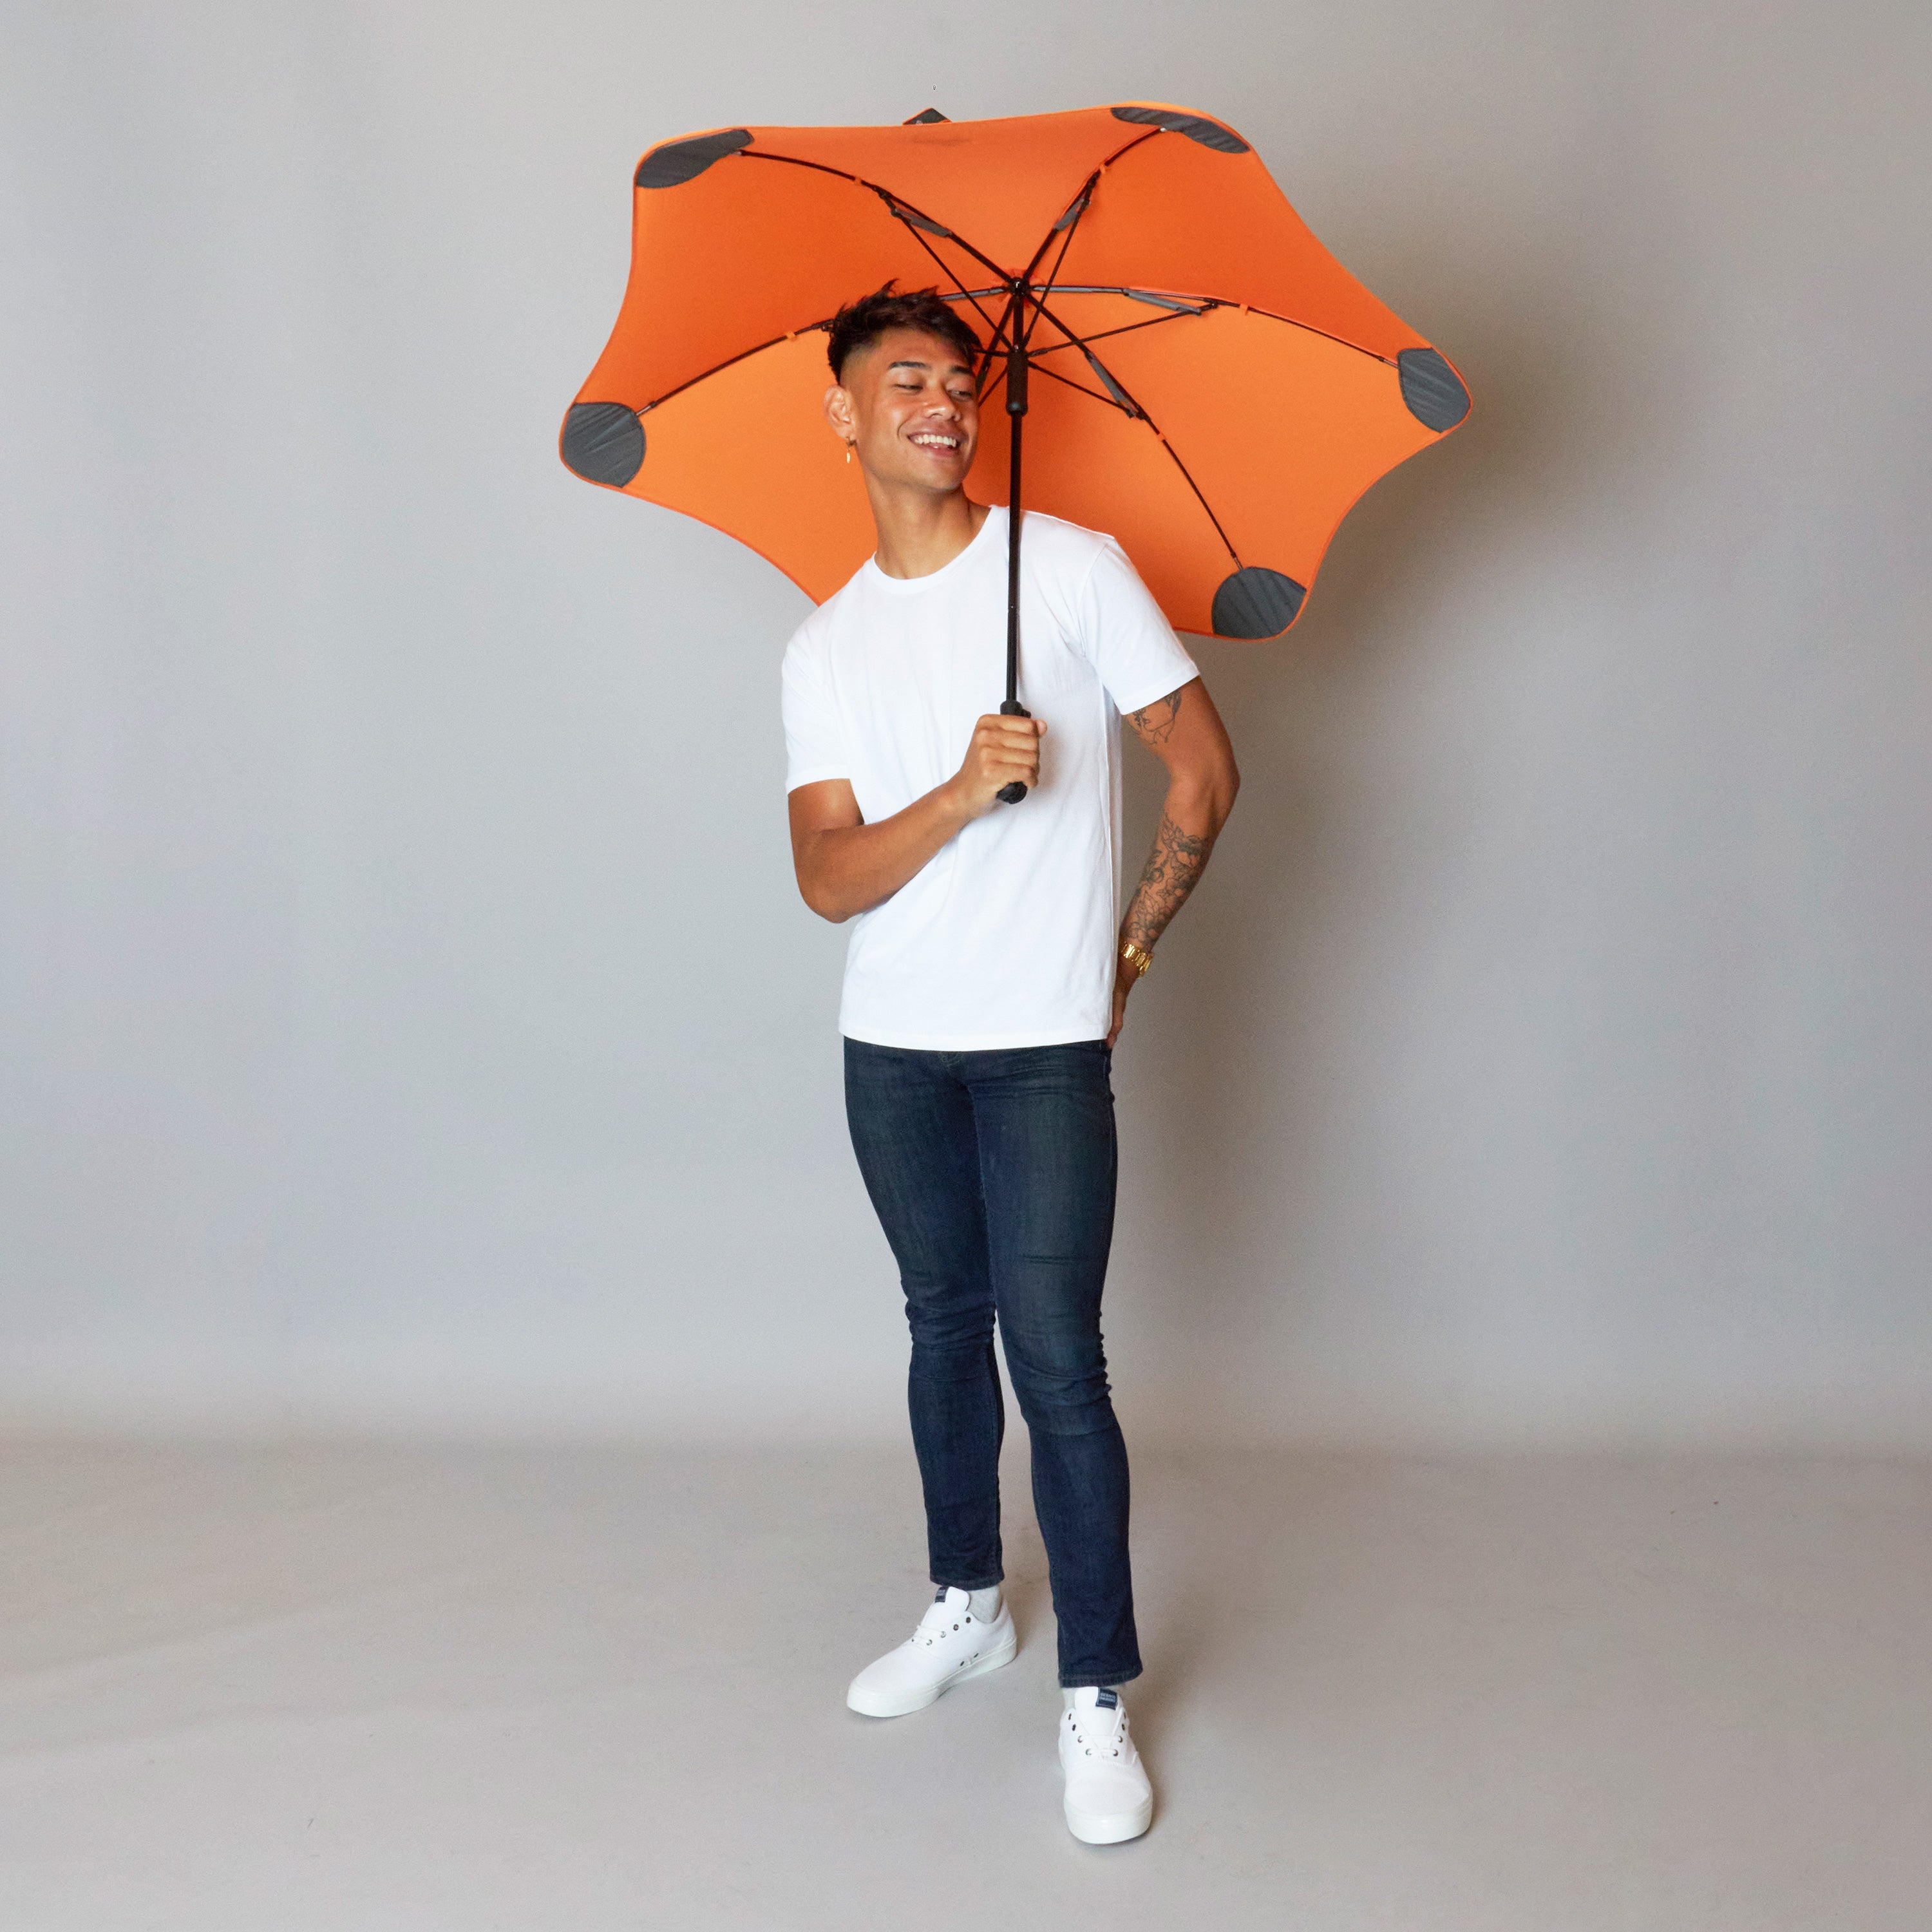 2020 Classic Orange Blunt Umbrella Model Front View